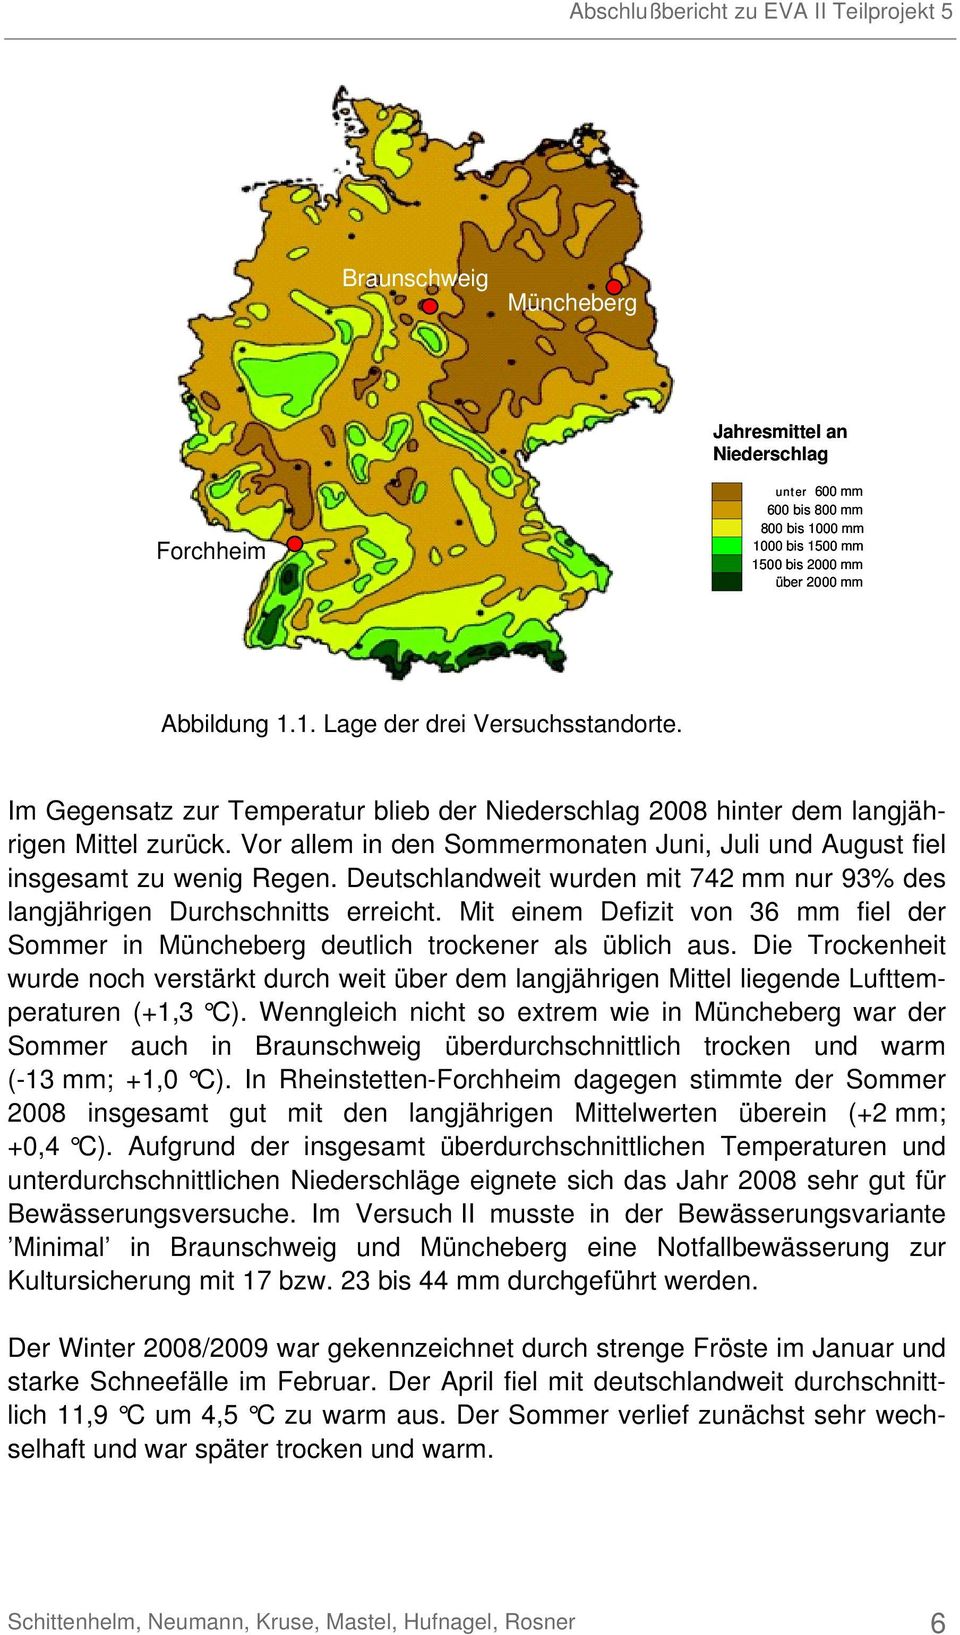 Deutschlandweit wurden mit 742 mm nur 93% des langjährigen Durchschnitts erreicht. Mit einem Defizit von 36 mm fiel der Sommer in Müncheberg deutlich trockener als üblich aus.